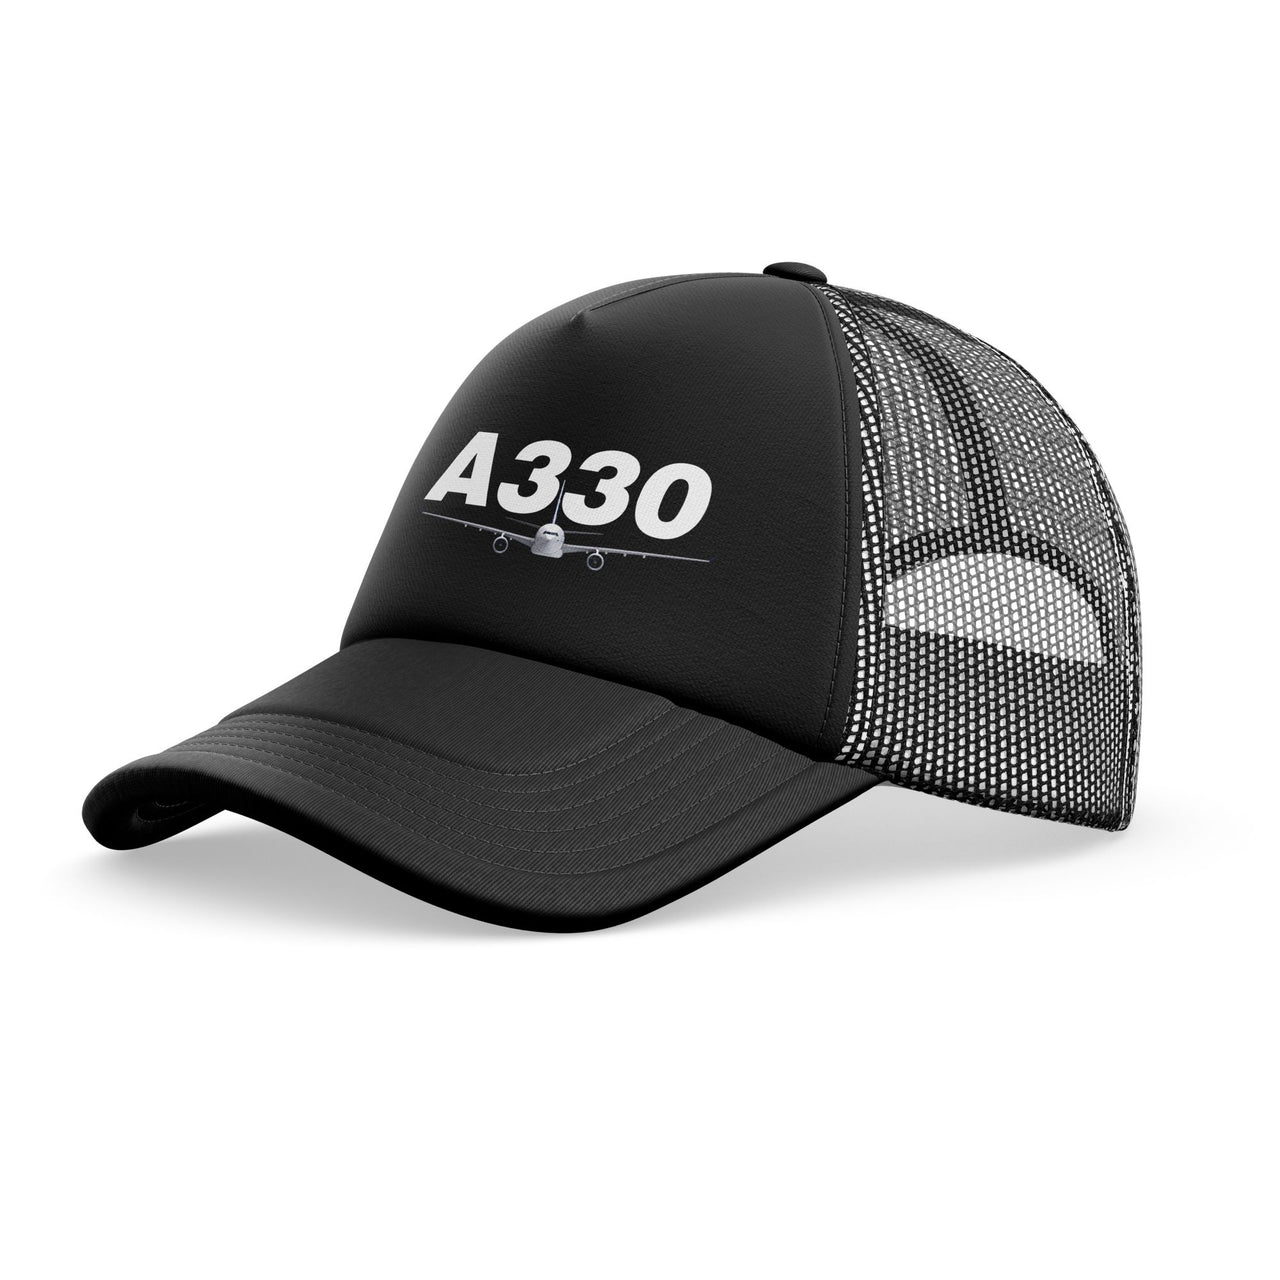 Super Airbus A330 Designed Trucker Caps & Hats